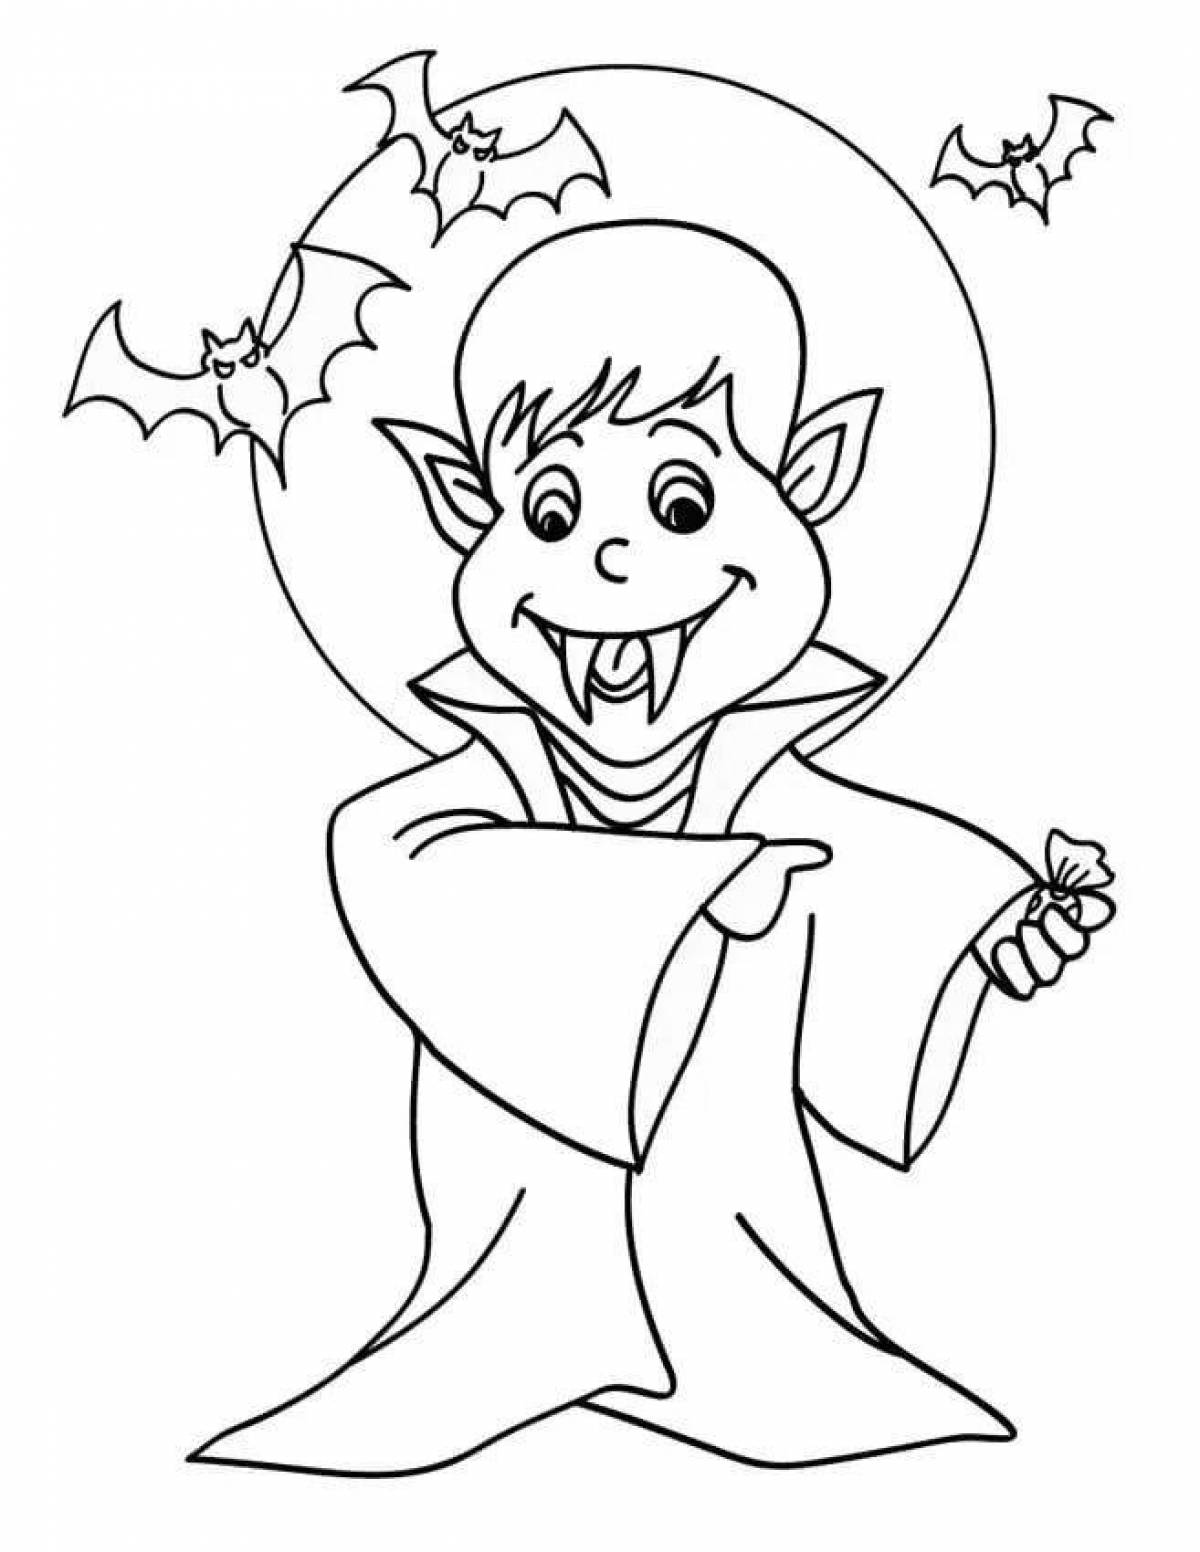 Раскраска Мальчик в костюме вампира распечатать или скачать